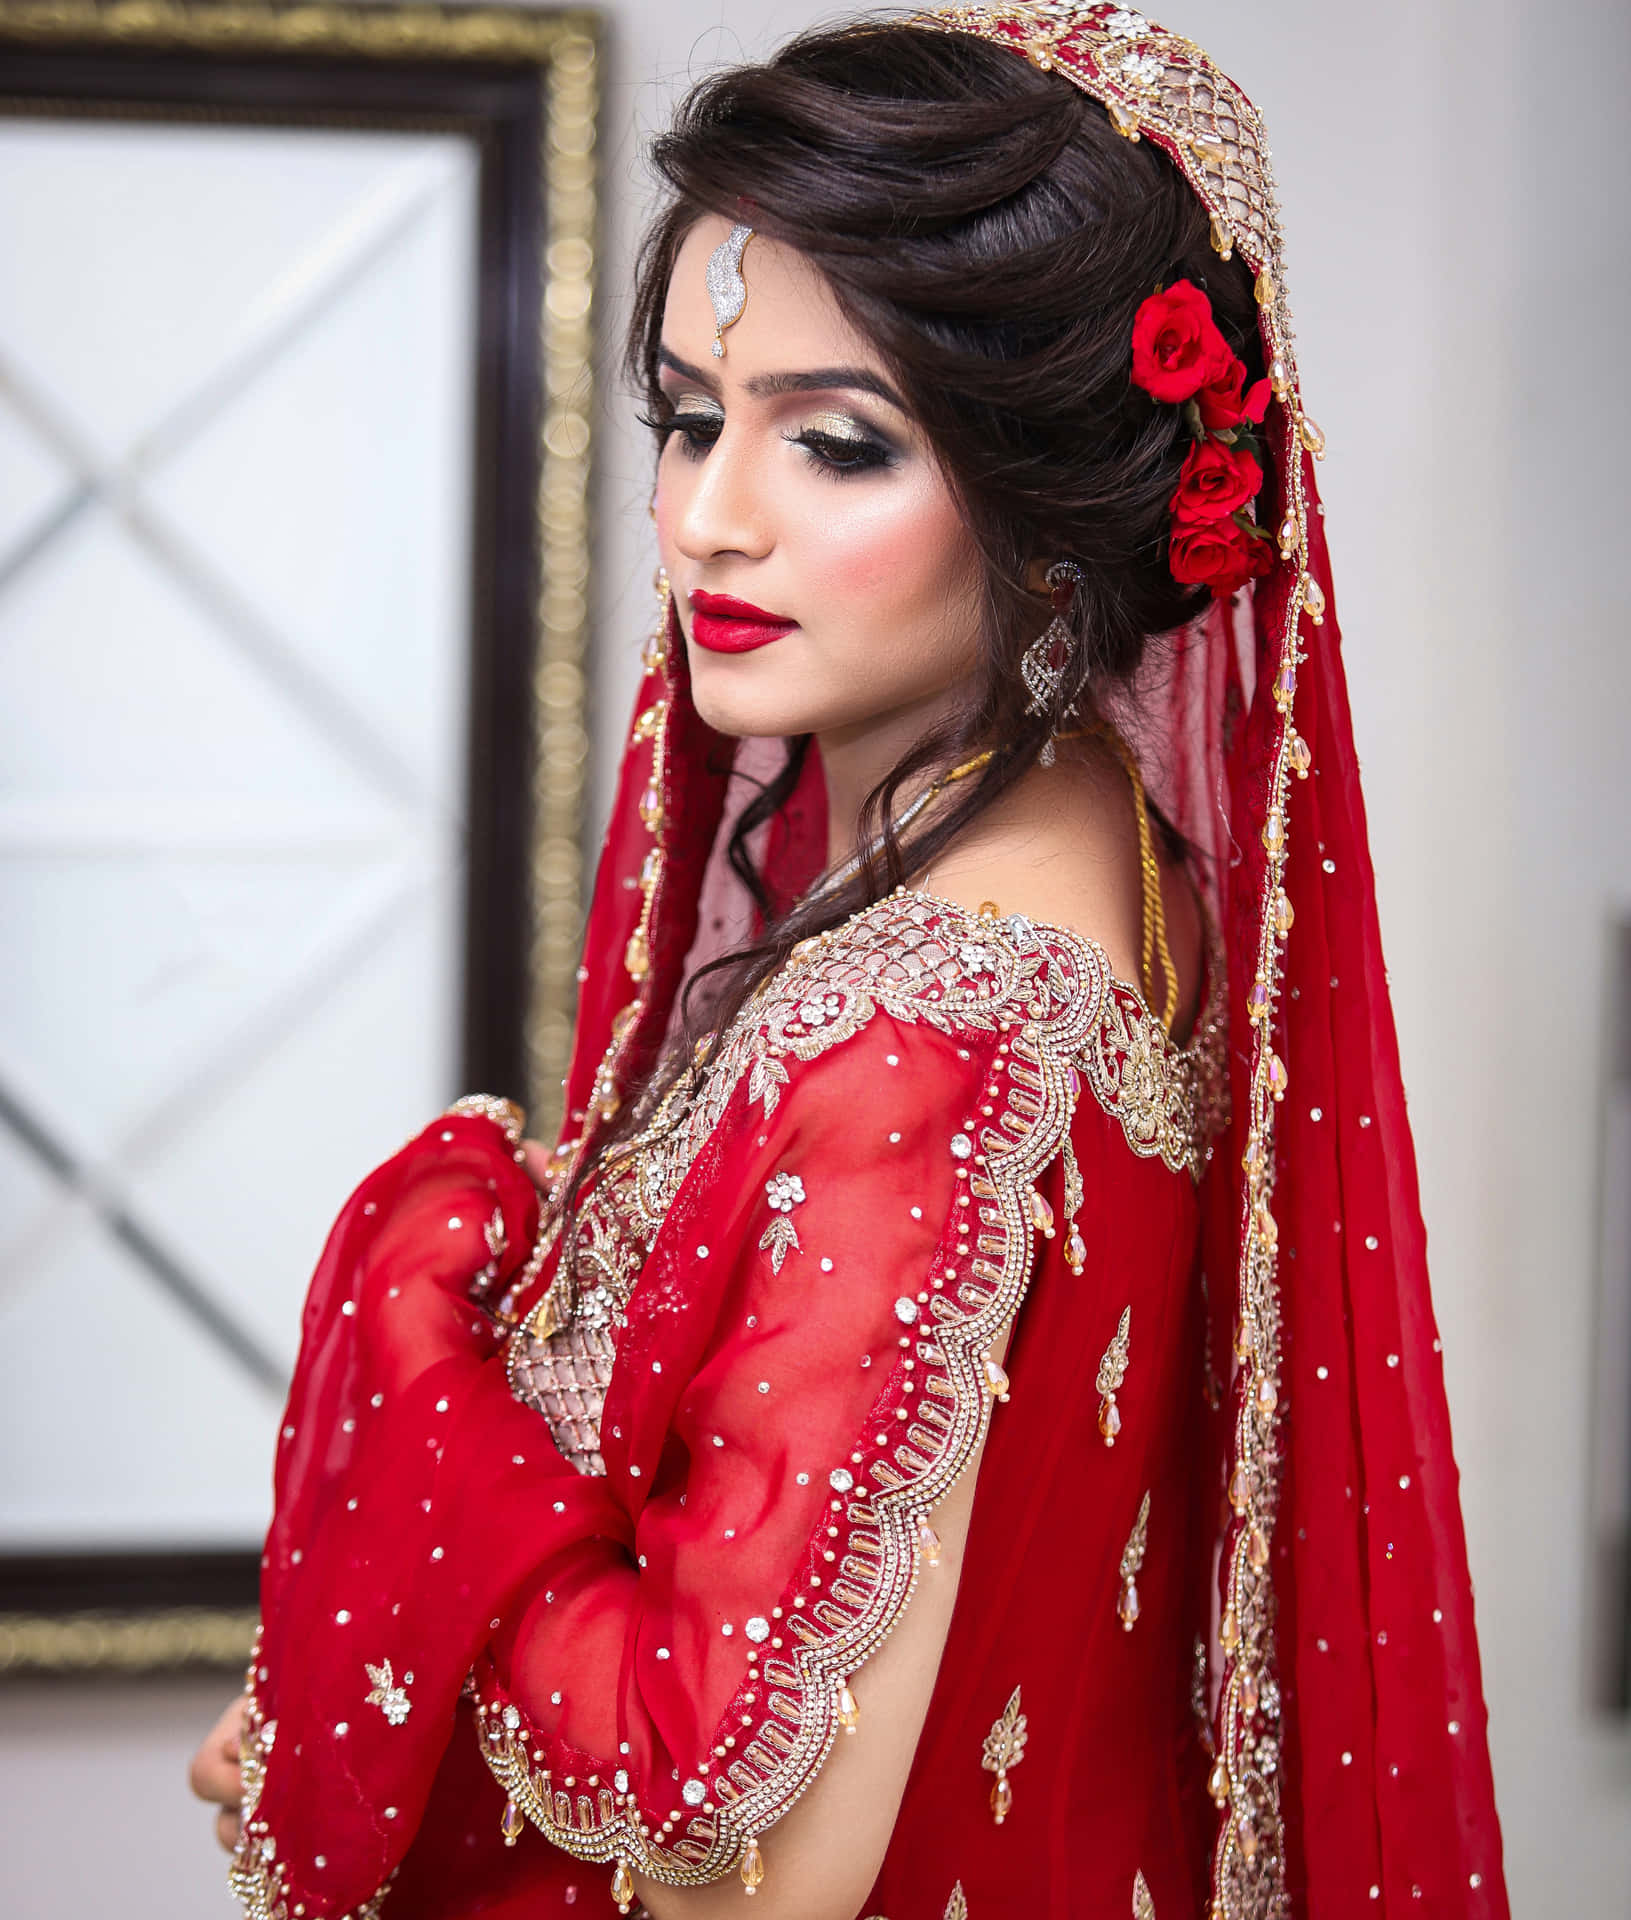 Bride Wedding Indian - Free photo on Pixabay - Pixabay